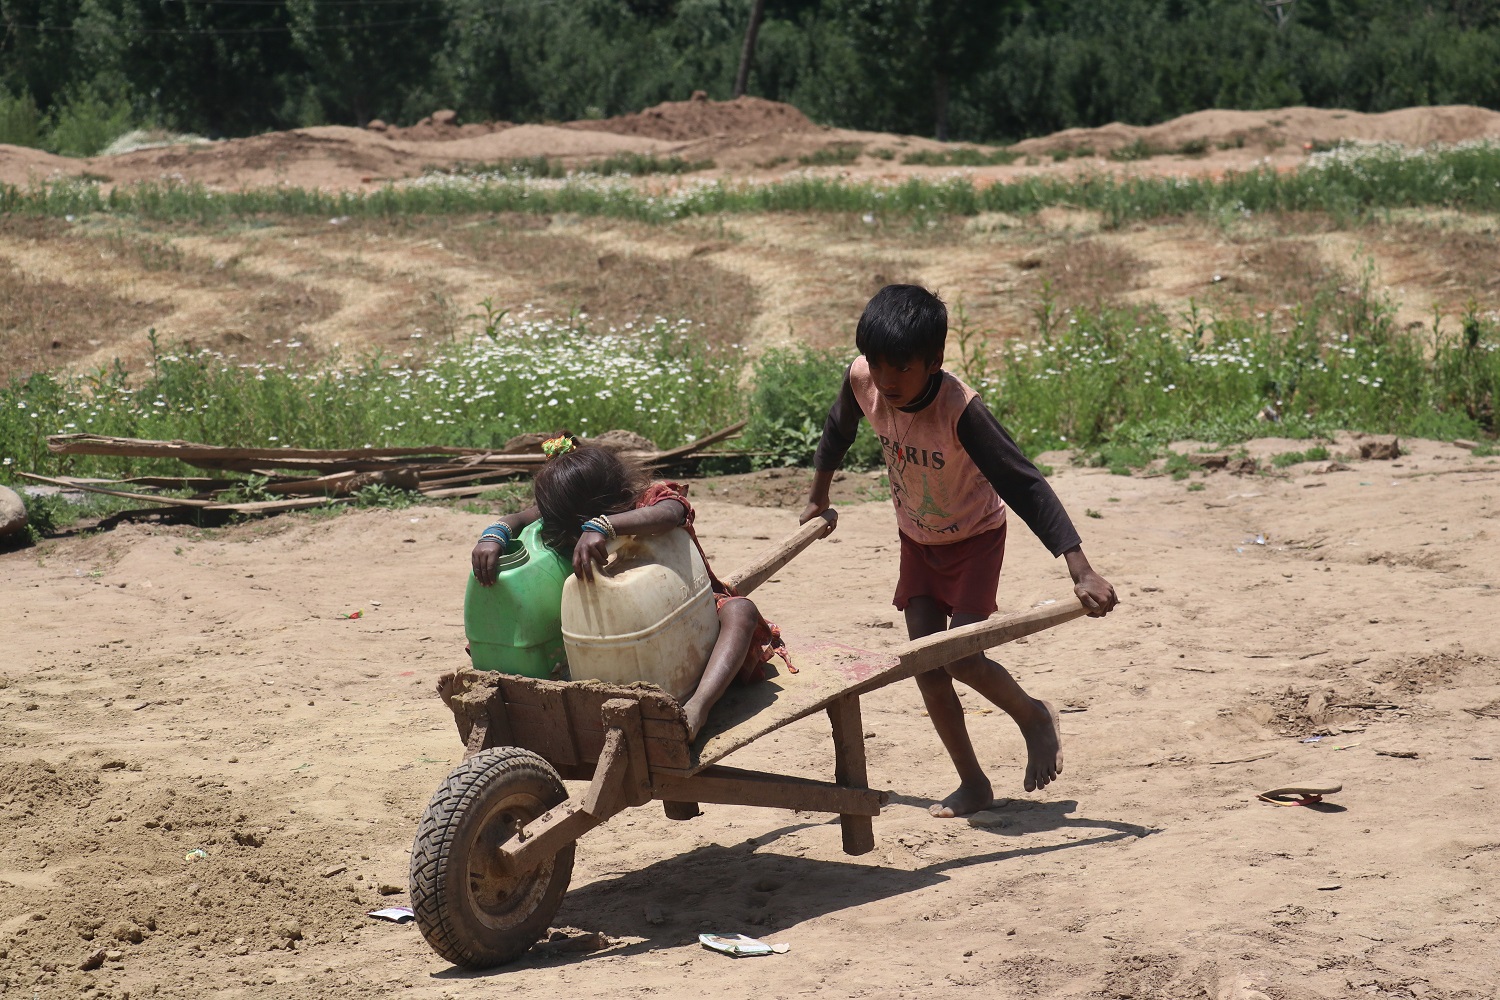 کشمیر کے اینٹ بھٹوں میں پرورش پانے والے ہزاروں غیر مقامی بچے نہ صرف تعلیم سے محروم رہتے ہیں بلکہ بچہ مزدور بھی بن جاتے ہیں۔ (تصویر: بلال بہادر)